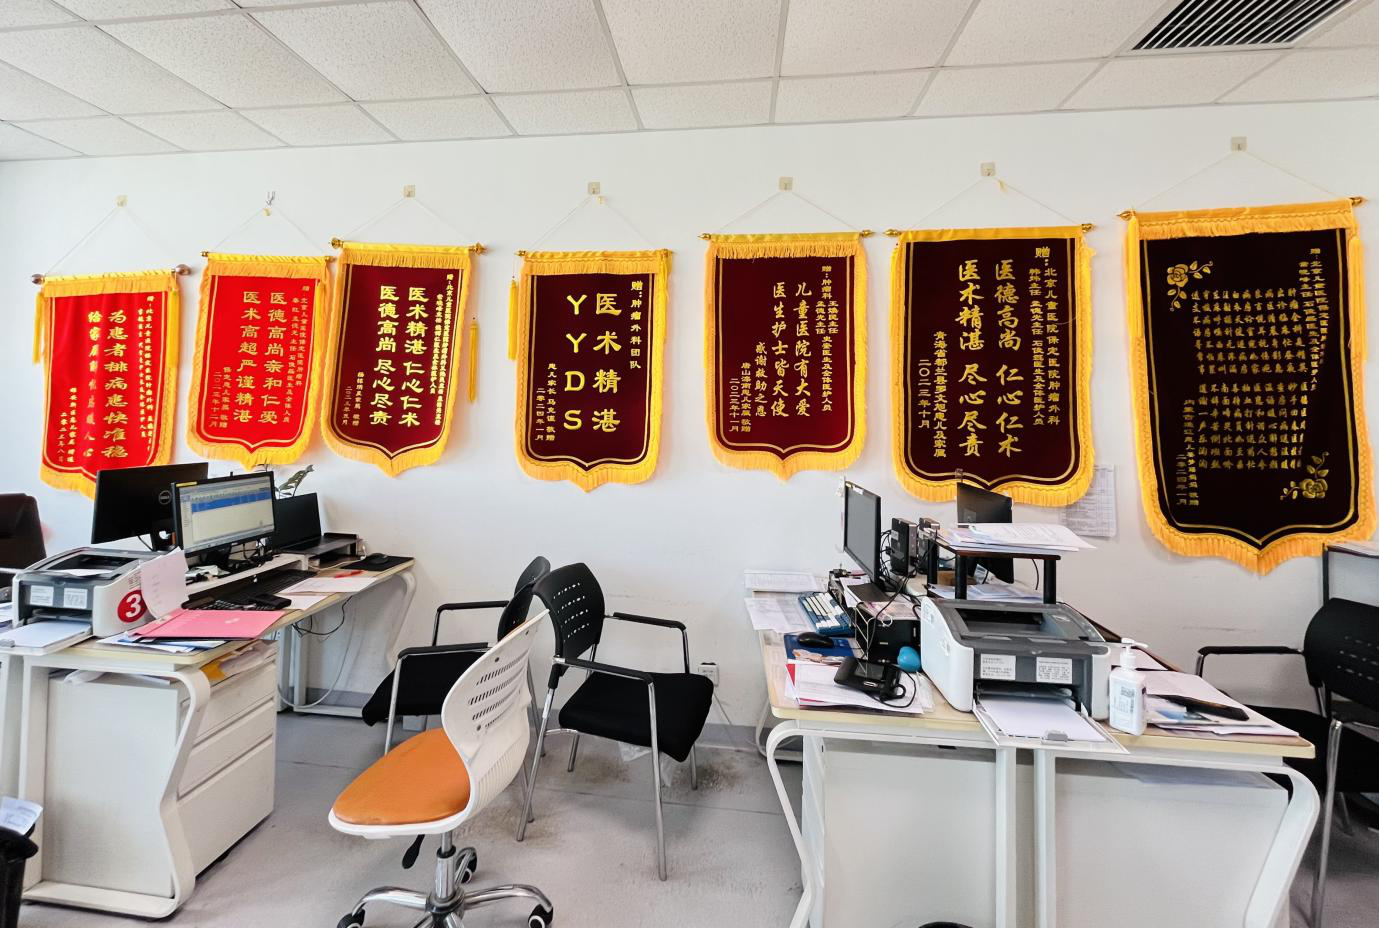 北京儿童医院保定医院医生办公室内，挂满了一面墙的锦旗。央视网记者王卓婕摄。